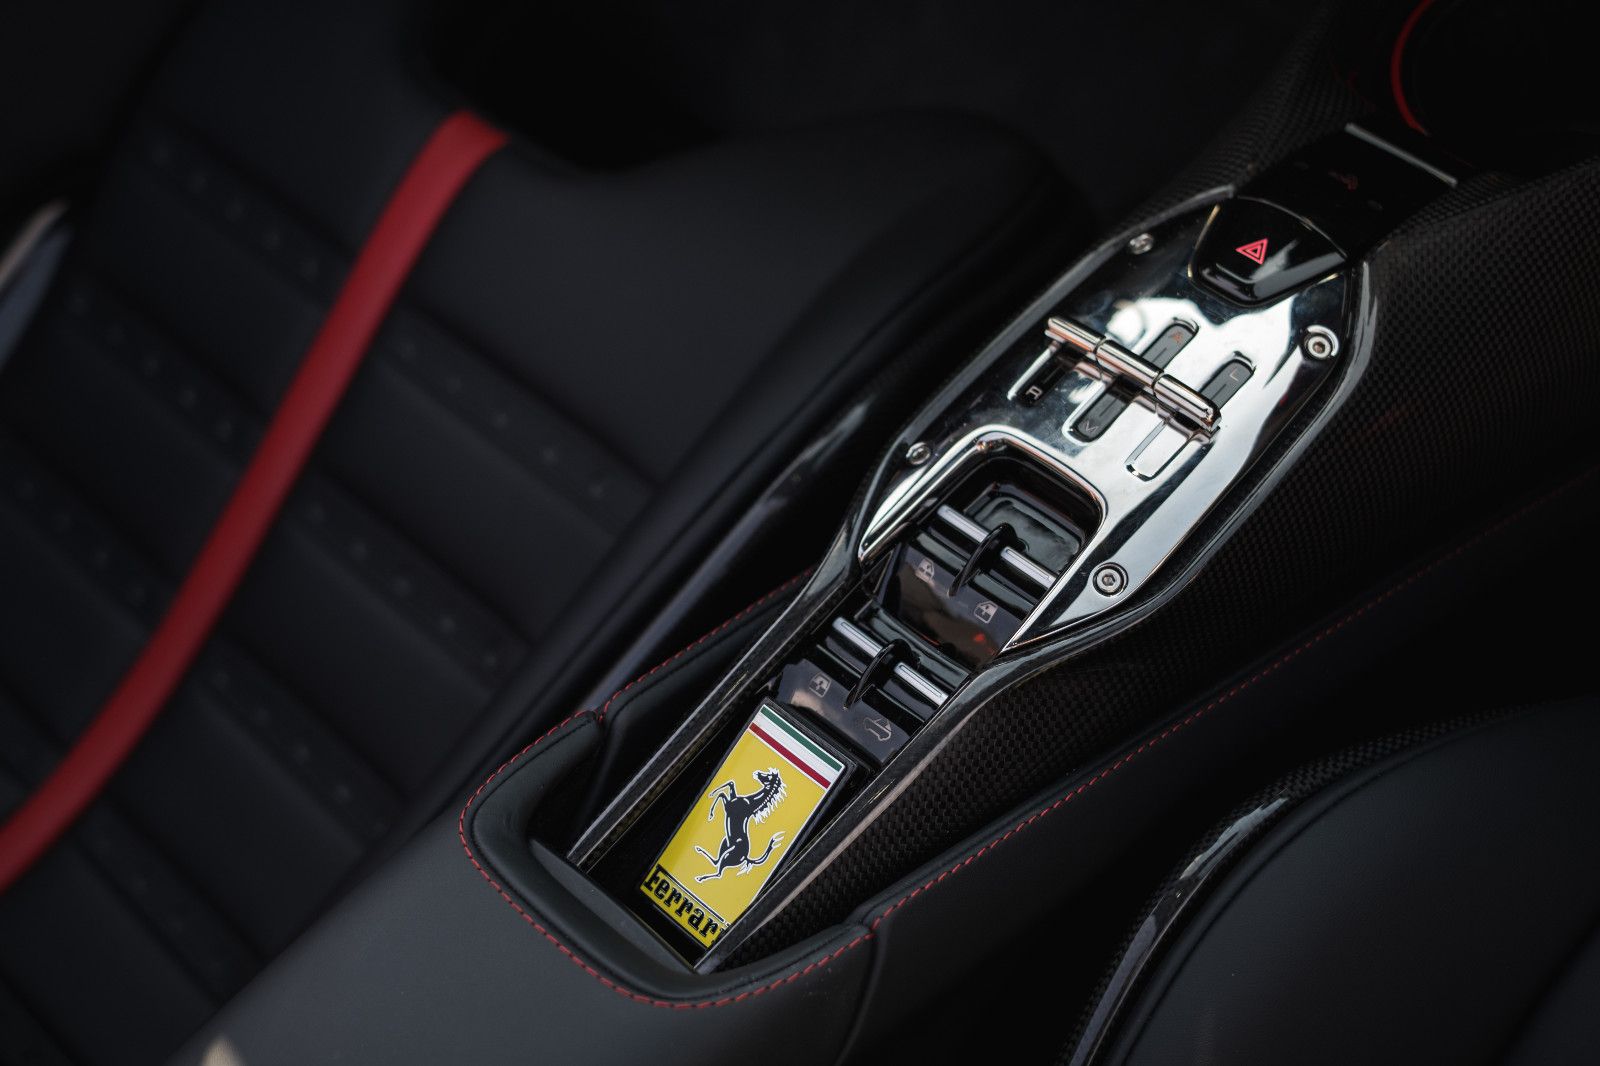 Fahrzeugabbildung Ferrari SF90 Spider-Carbon Wheels-Lift-Daytona Seats-AFS